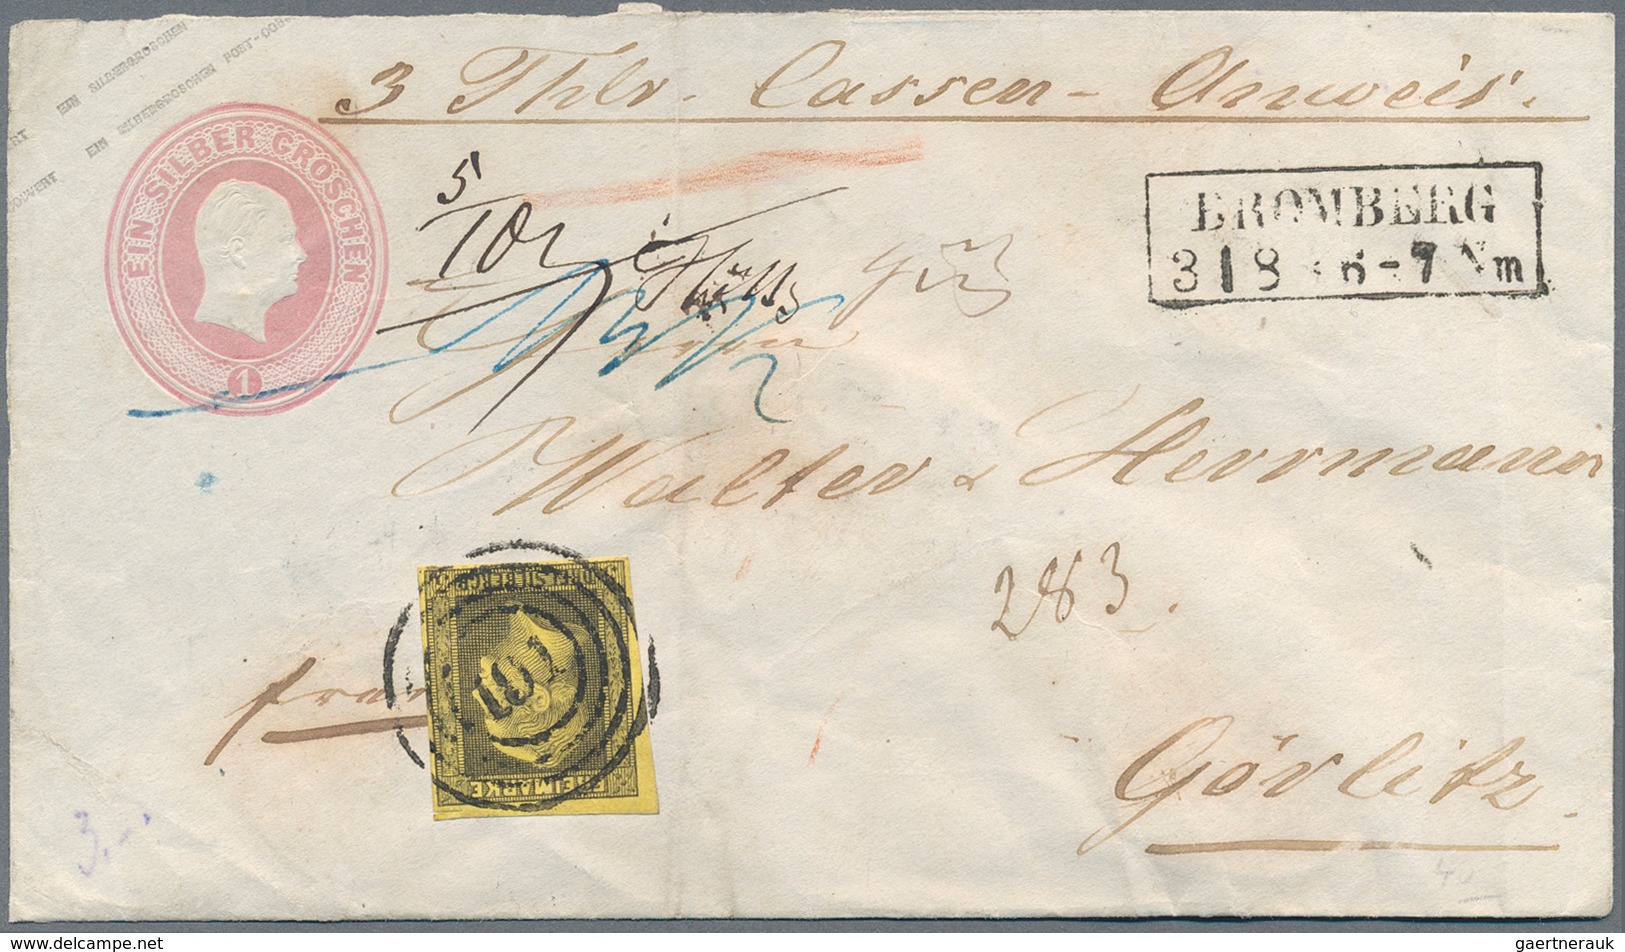 Preußen - Marken und Briefe: 1856/1868 (ca.), umfangreicher Posten von über 130 Belegen, dabei Farb-